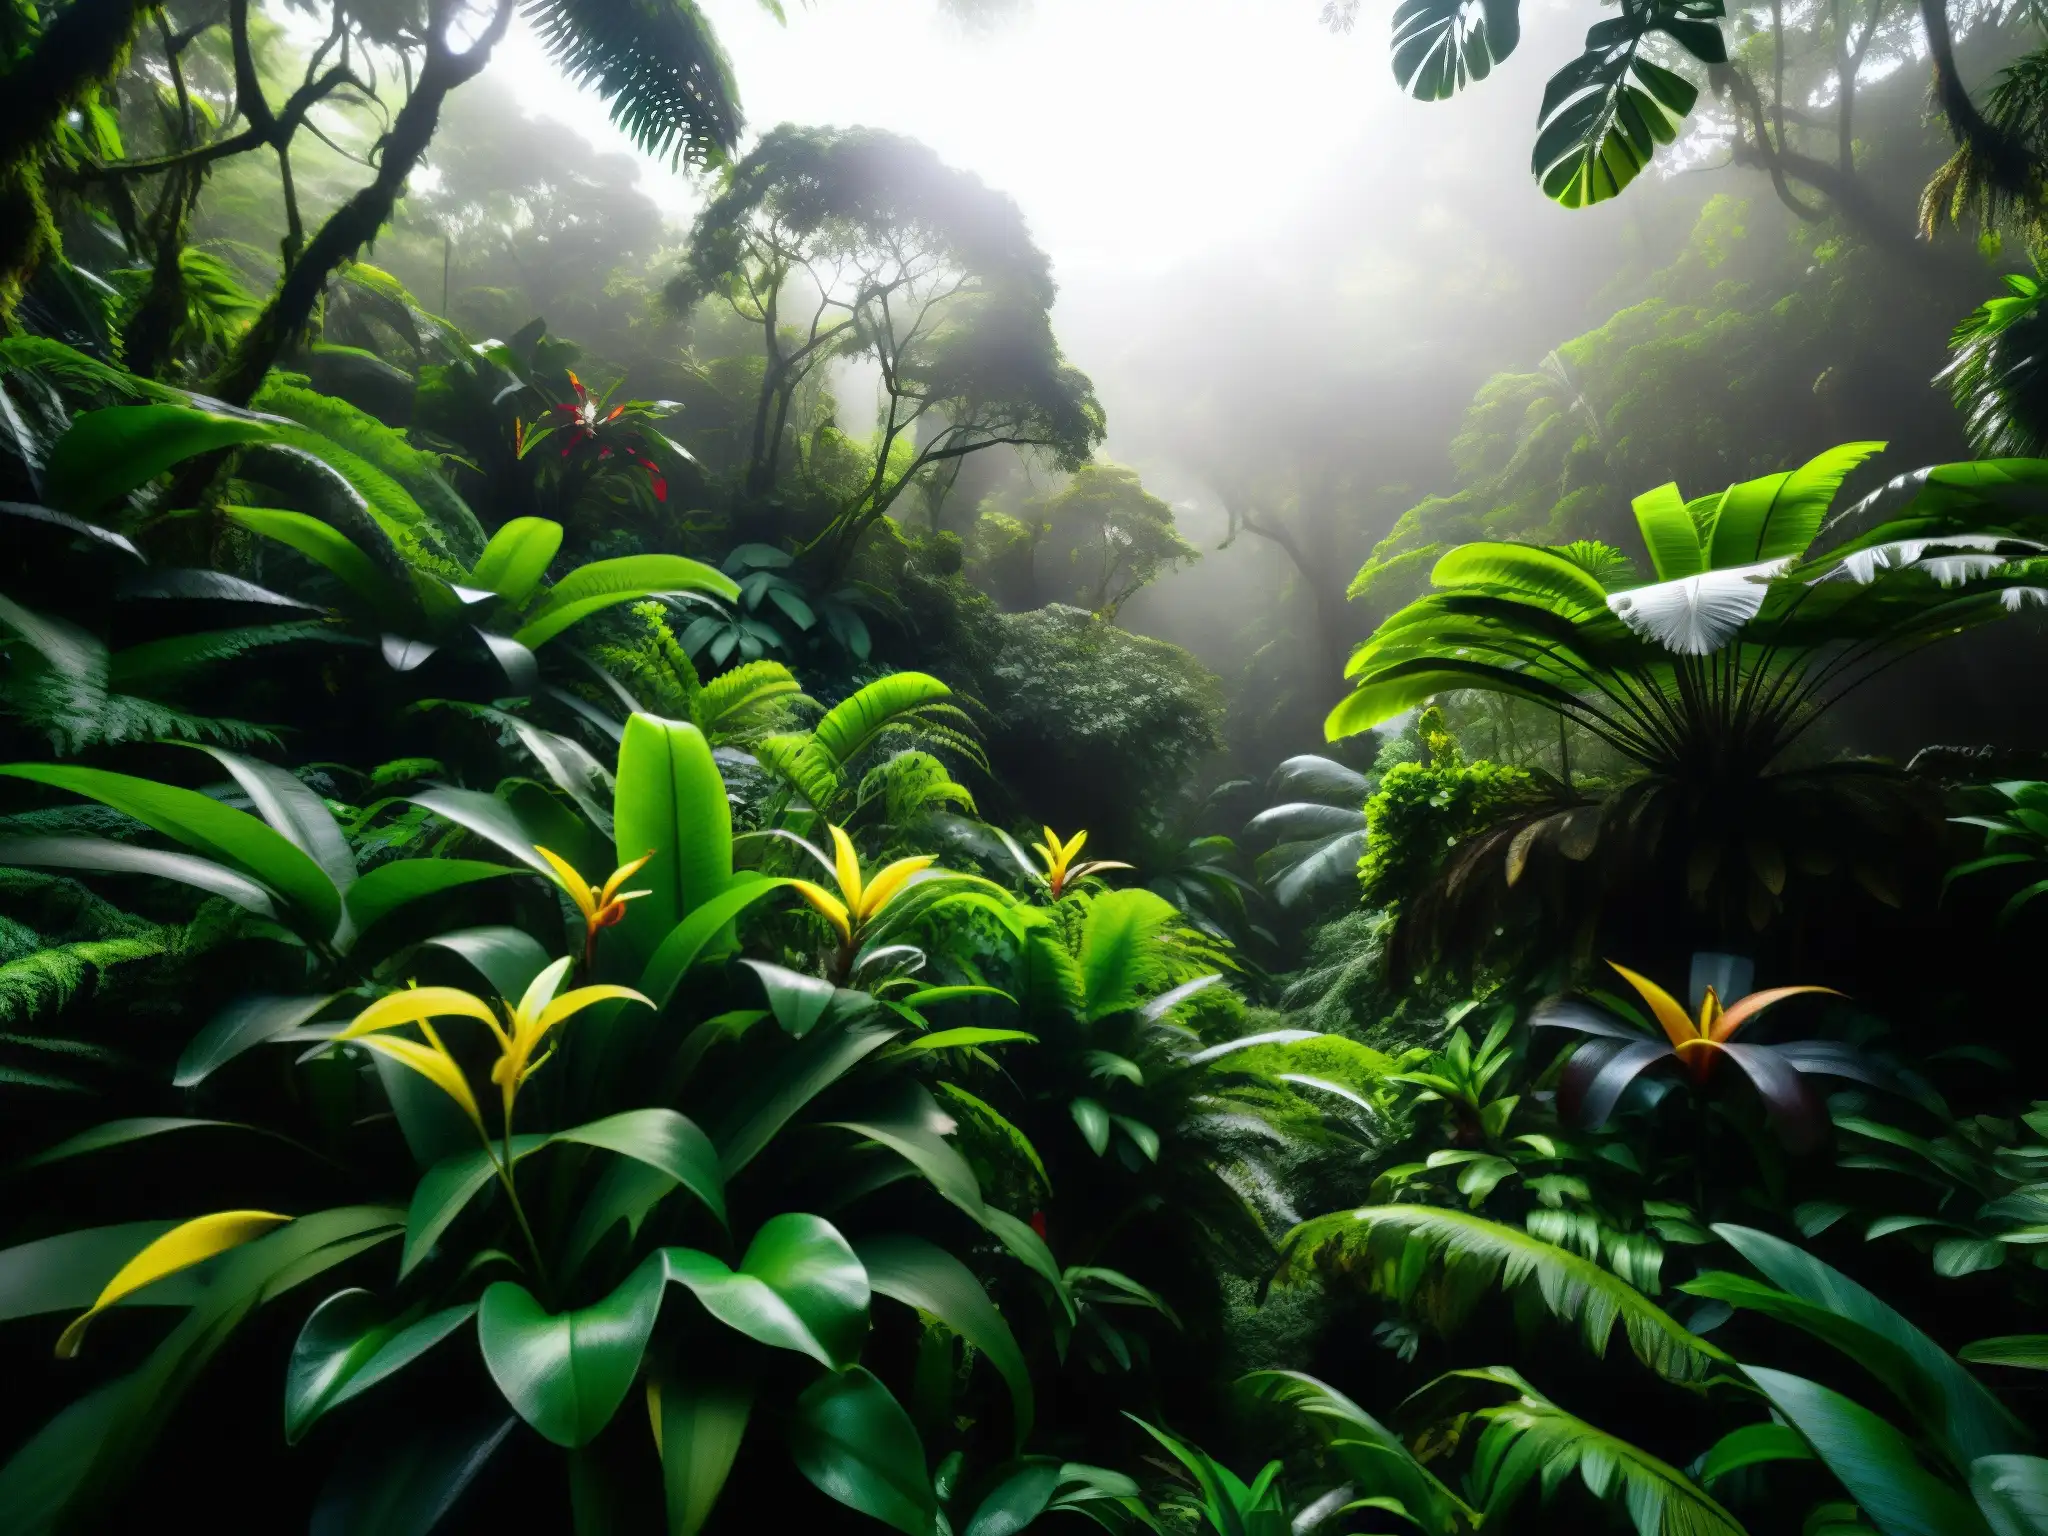 La densa selva del Pacífico ecuatoriano, con luz filtrándose entre las hojas, creando un juego dramático de luces y sombras en el suelo